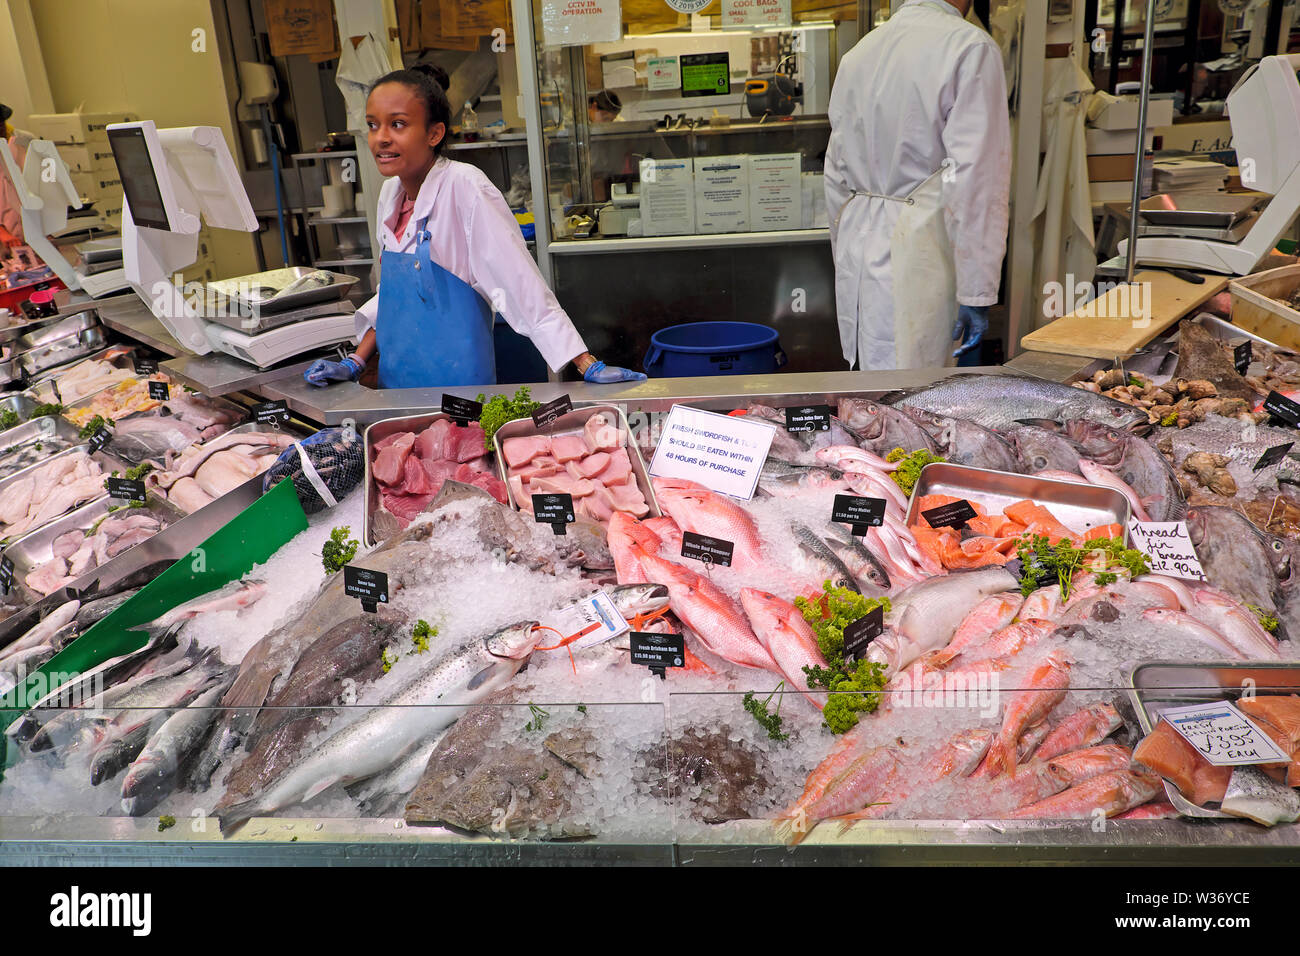 Cardiff Central Market junge Frau, die bei E. Ashton Fishmongers arbeitet und Meeresfrüchte an der Theke für frischen Fisch im Zentrum von Cardiff, Wales, UK, verkauft KATHY DEWIT Stockfoto